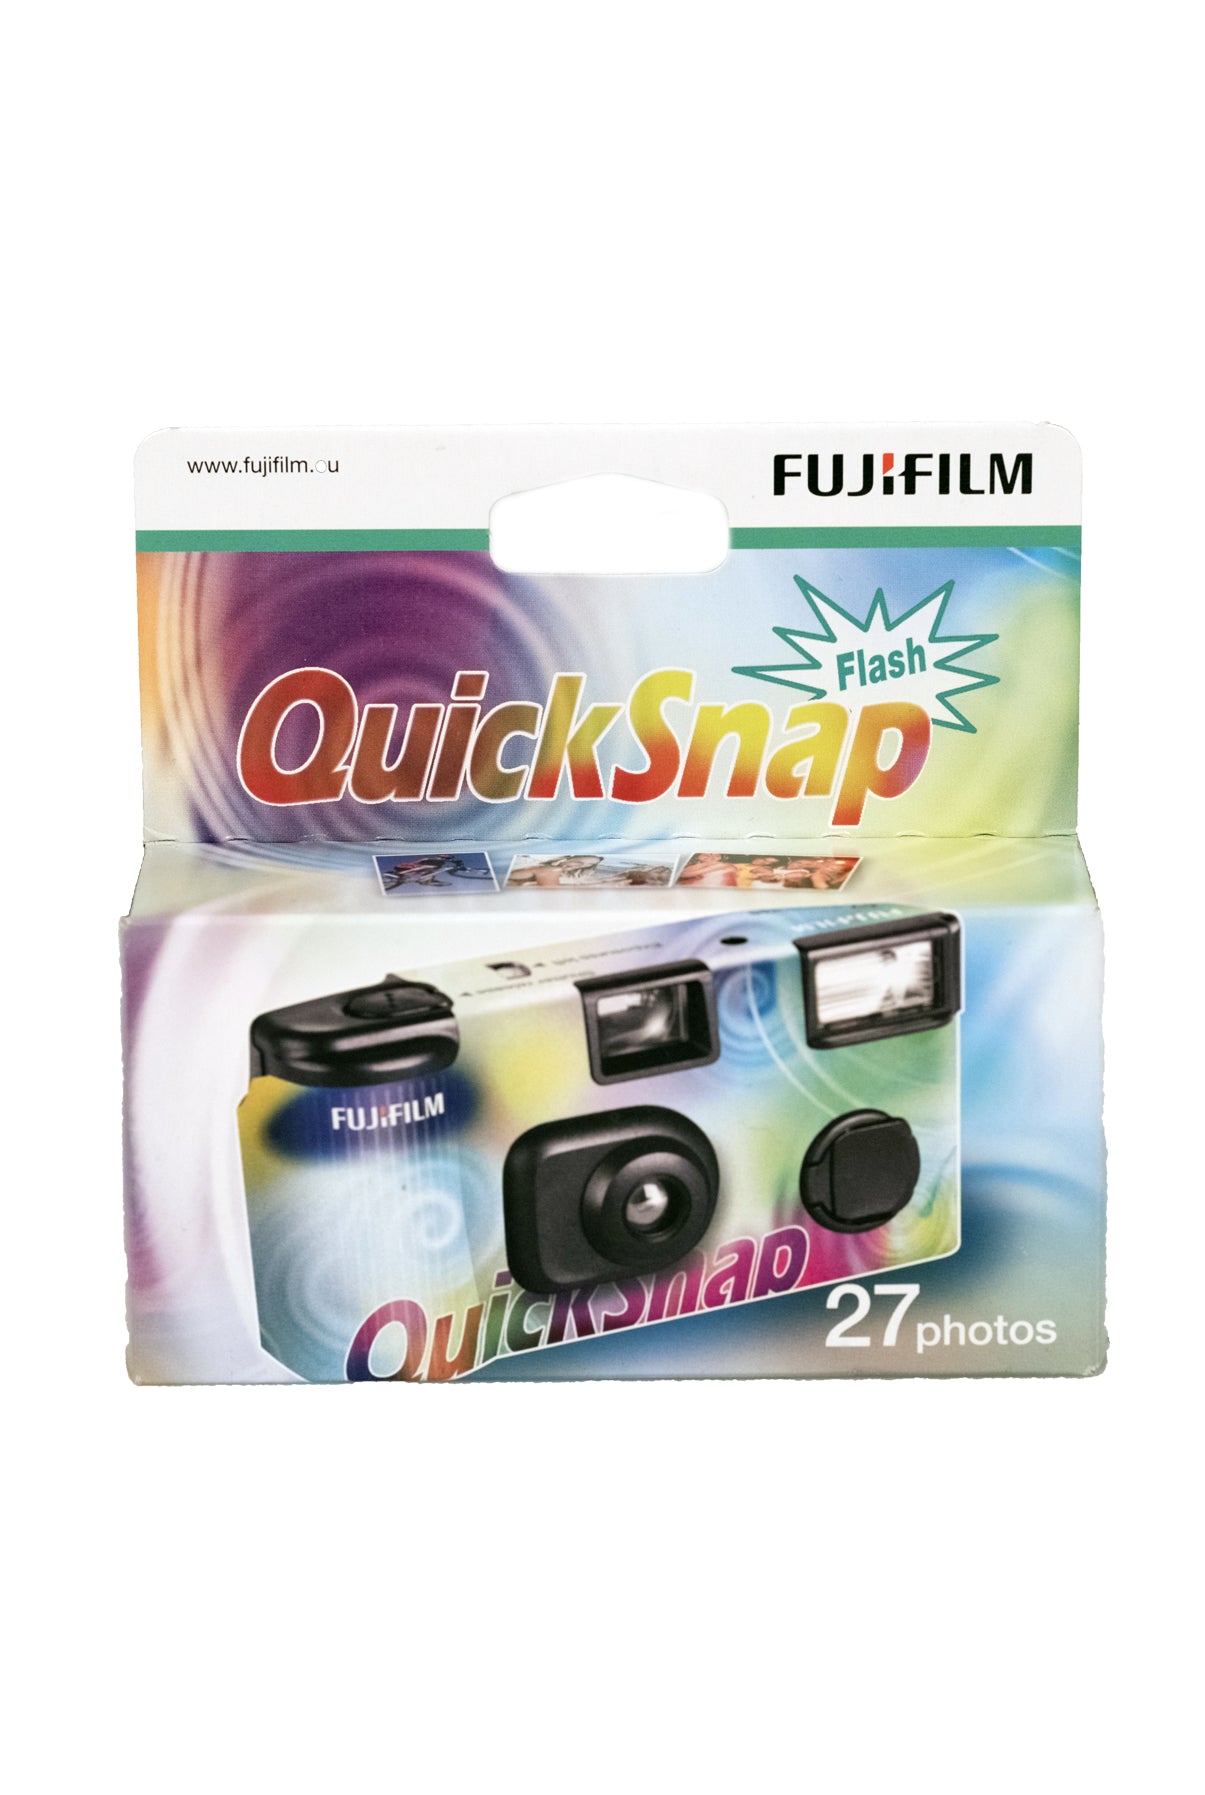 FUJIFILM Quick Snap Flash, 27 mynda